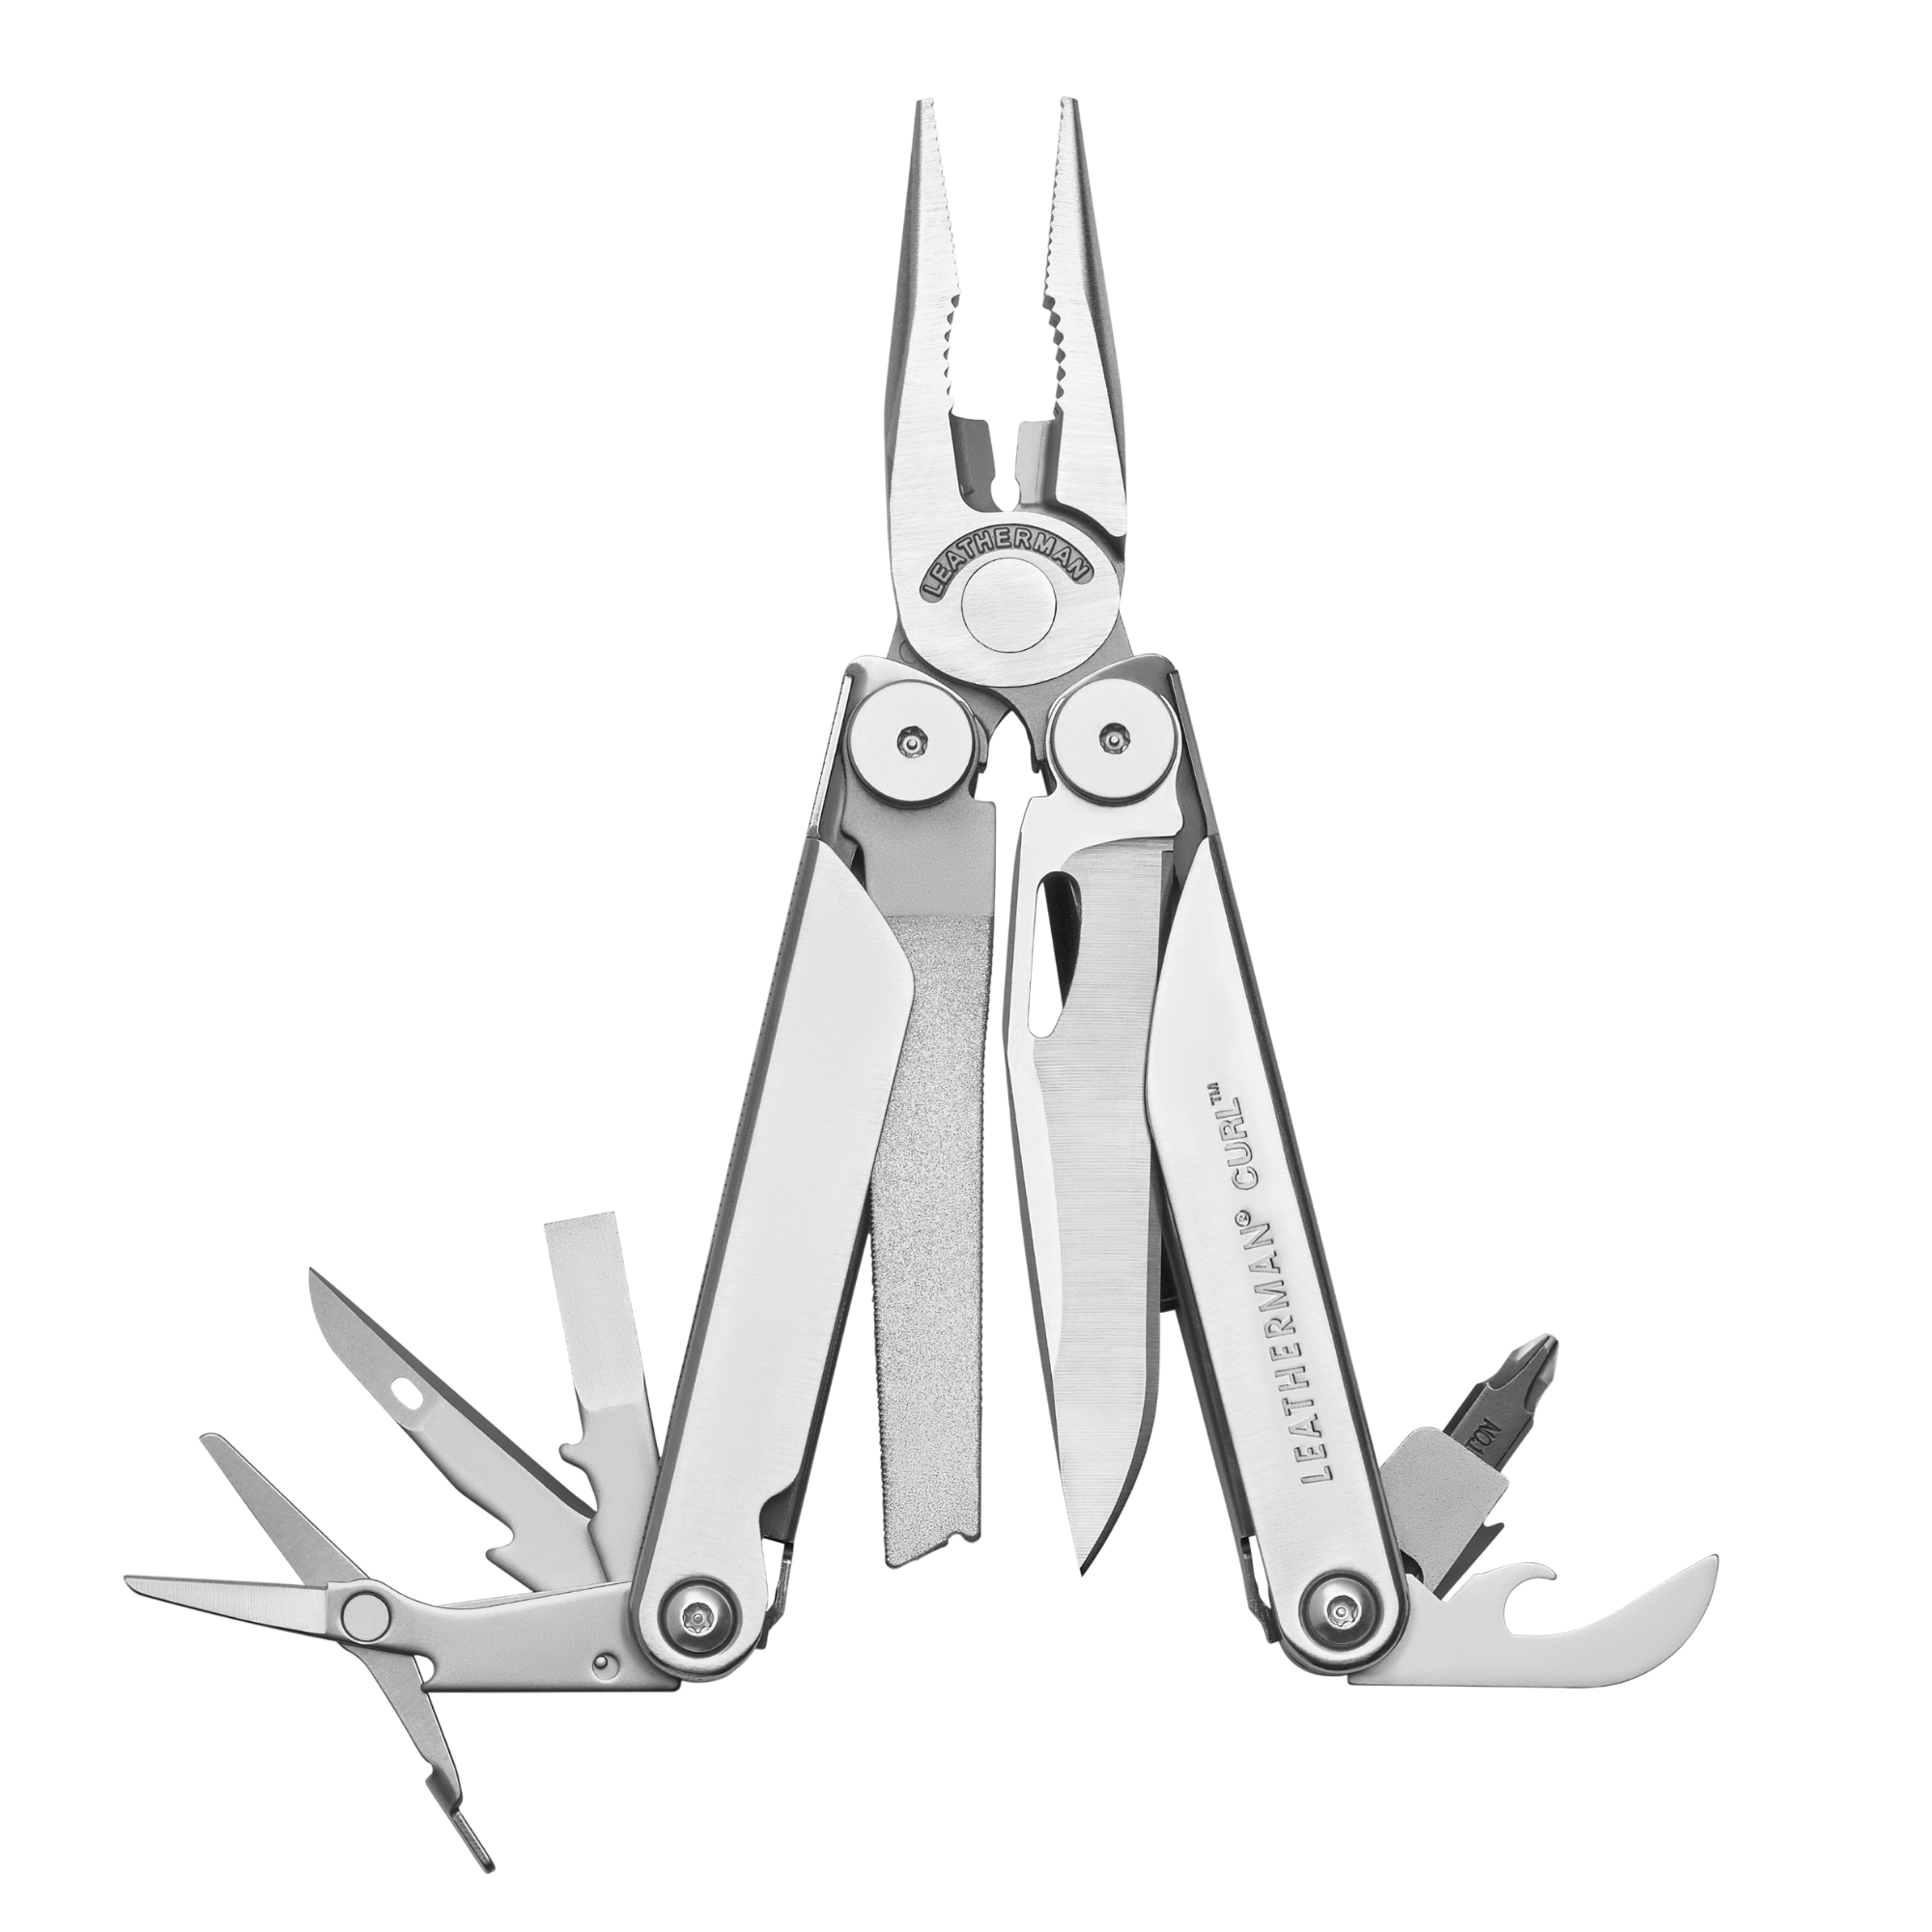 Leatherman Curl™, Multi Tool, 15 Tools, Stainless Steel, Lightweight, Engravable